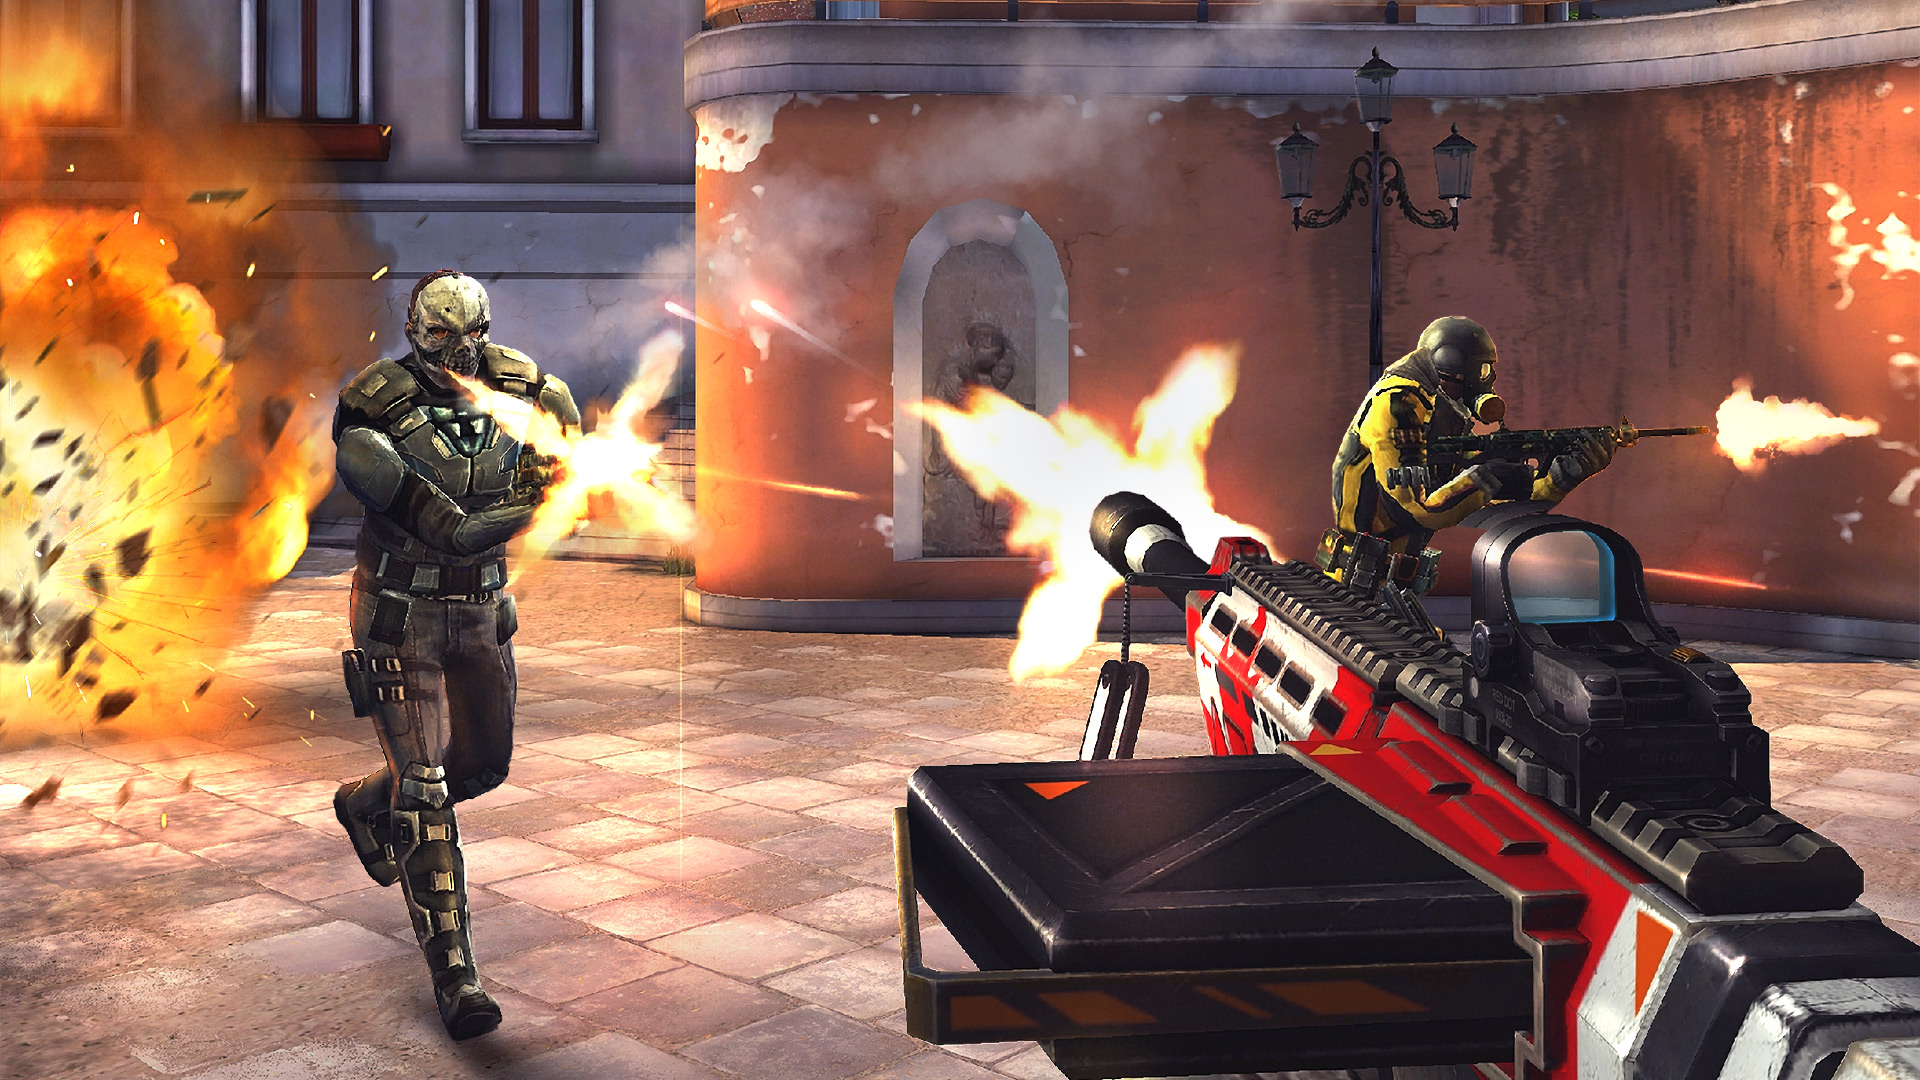 《现代战争5》确定登陆Steam 支持简体中文、游戏免费